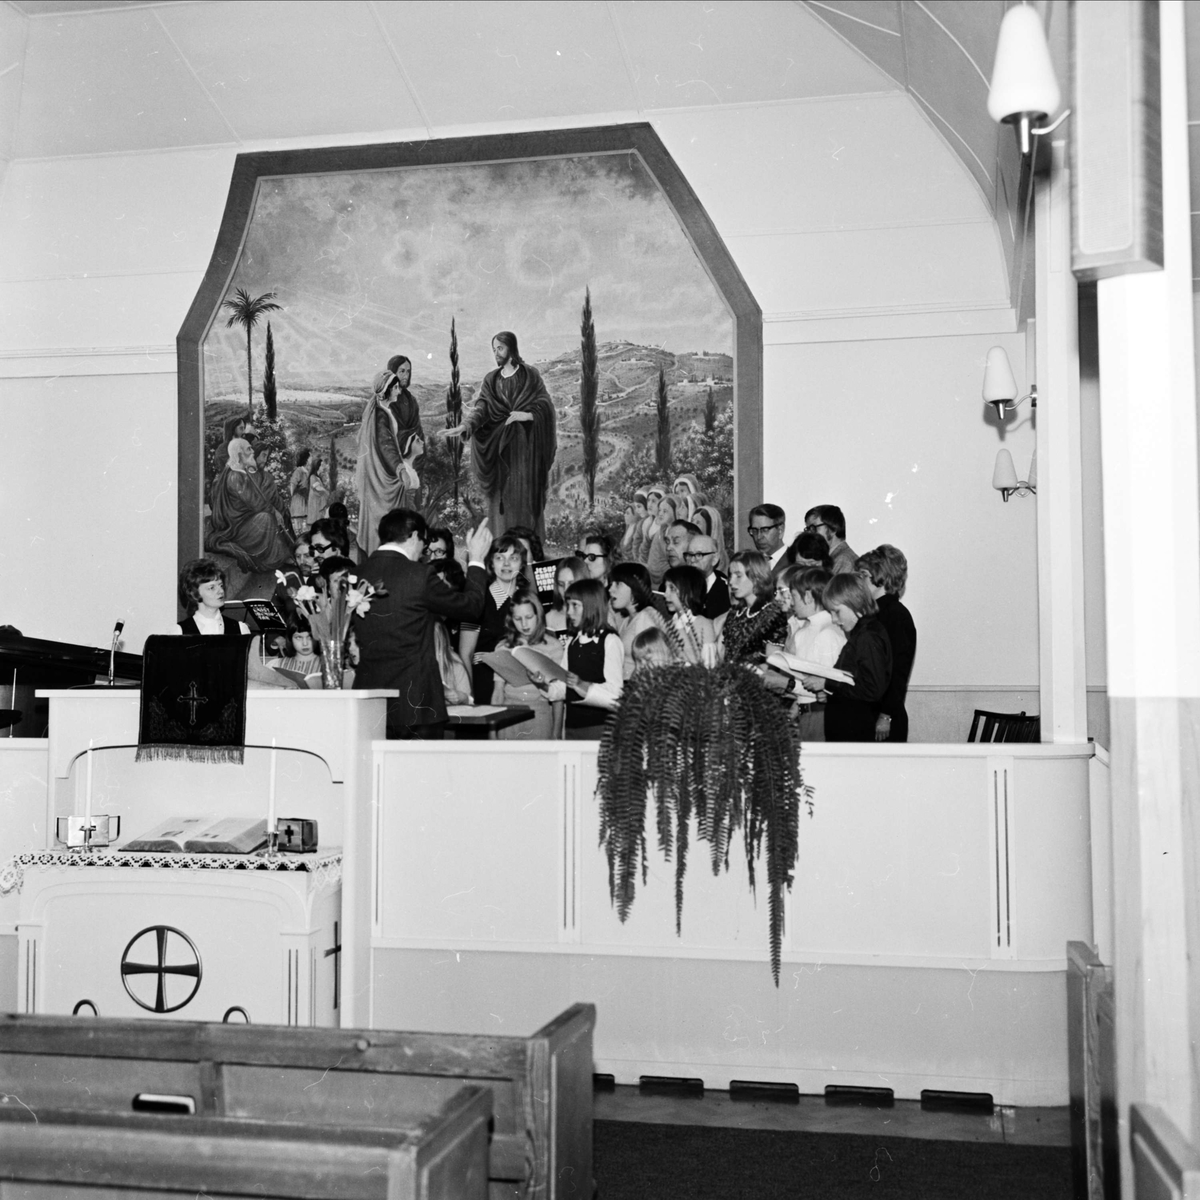 Jesus Christ morningstar i Missionskyrkan, Tierp, Uppland 1973